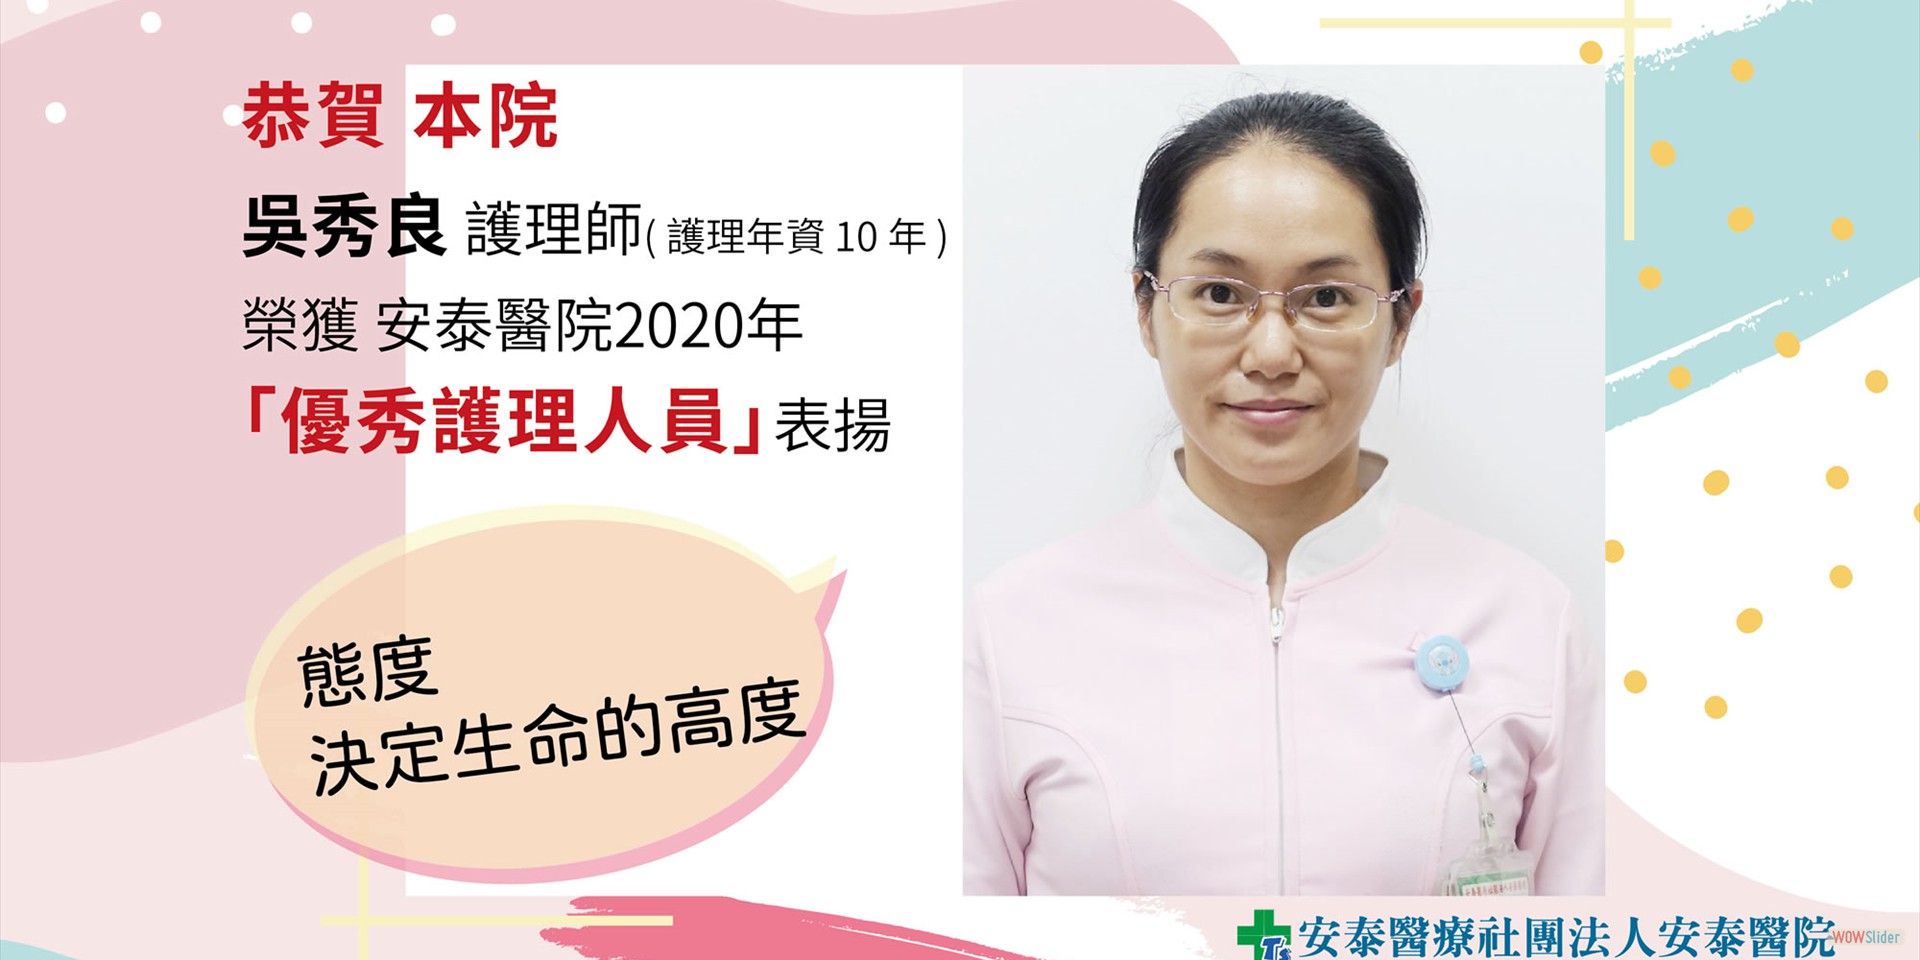 2020-優秀護理師_OPD-門診護理師-吳秀良